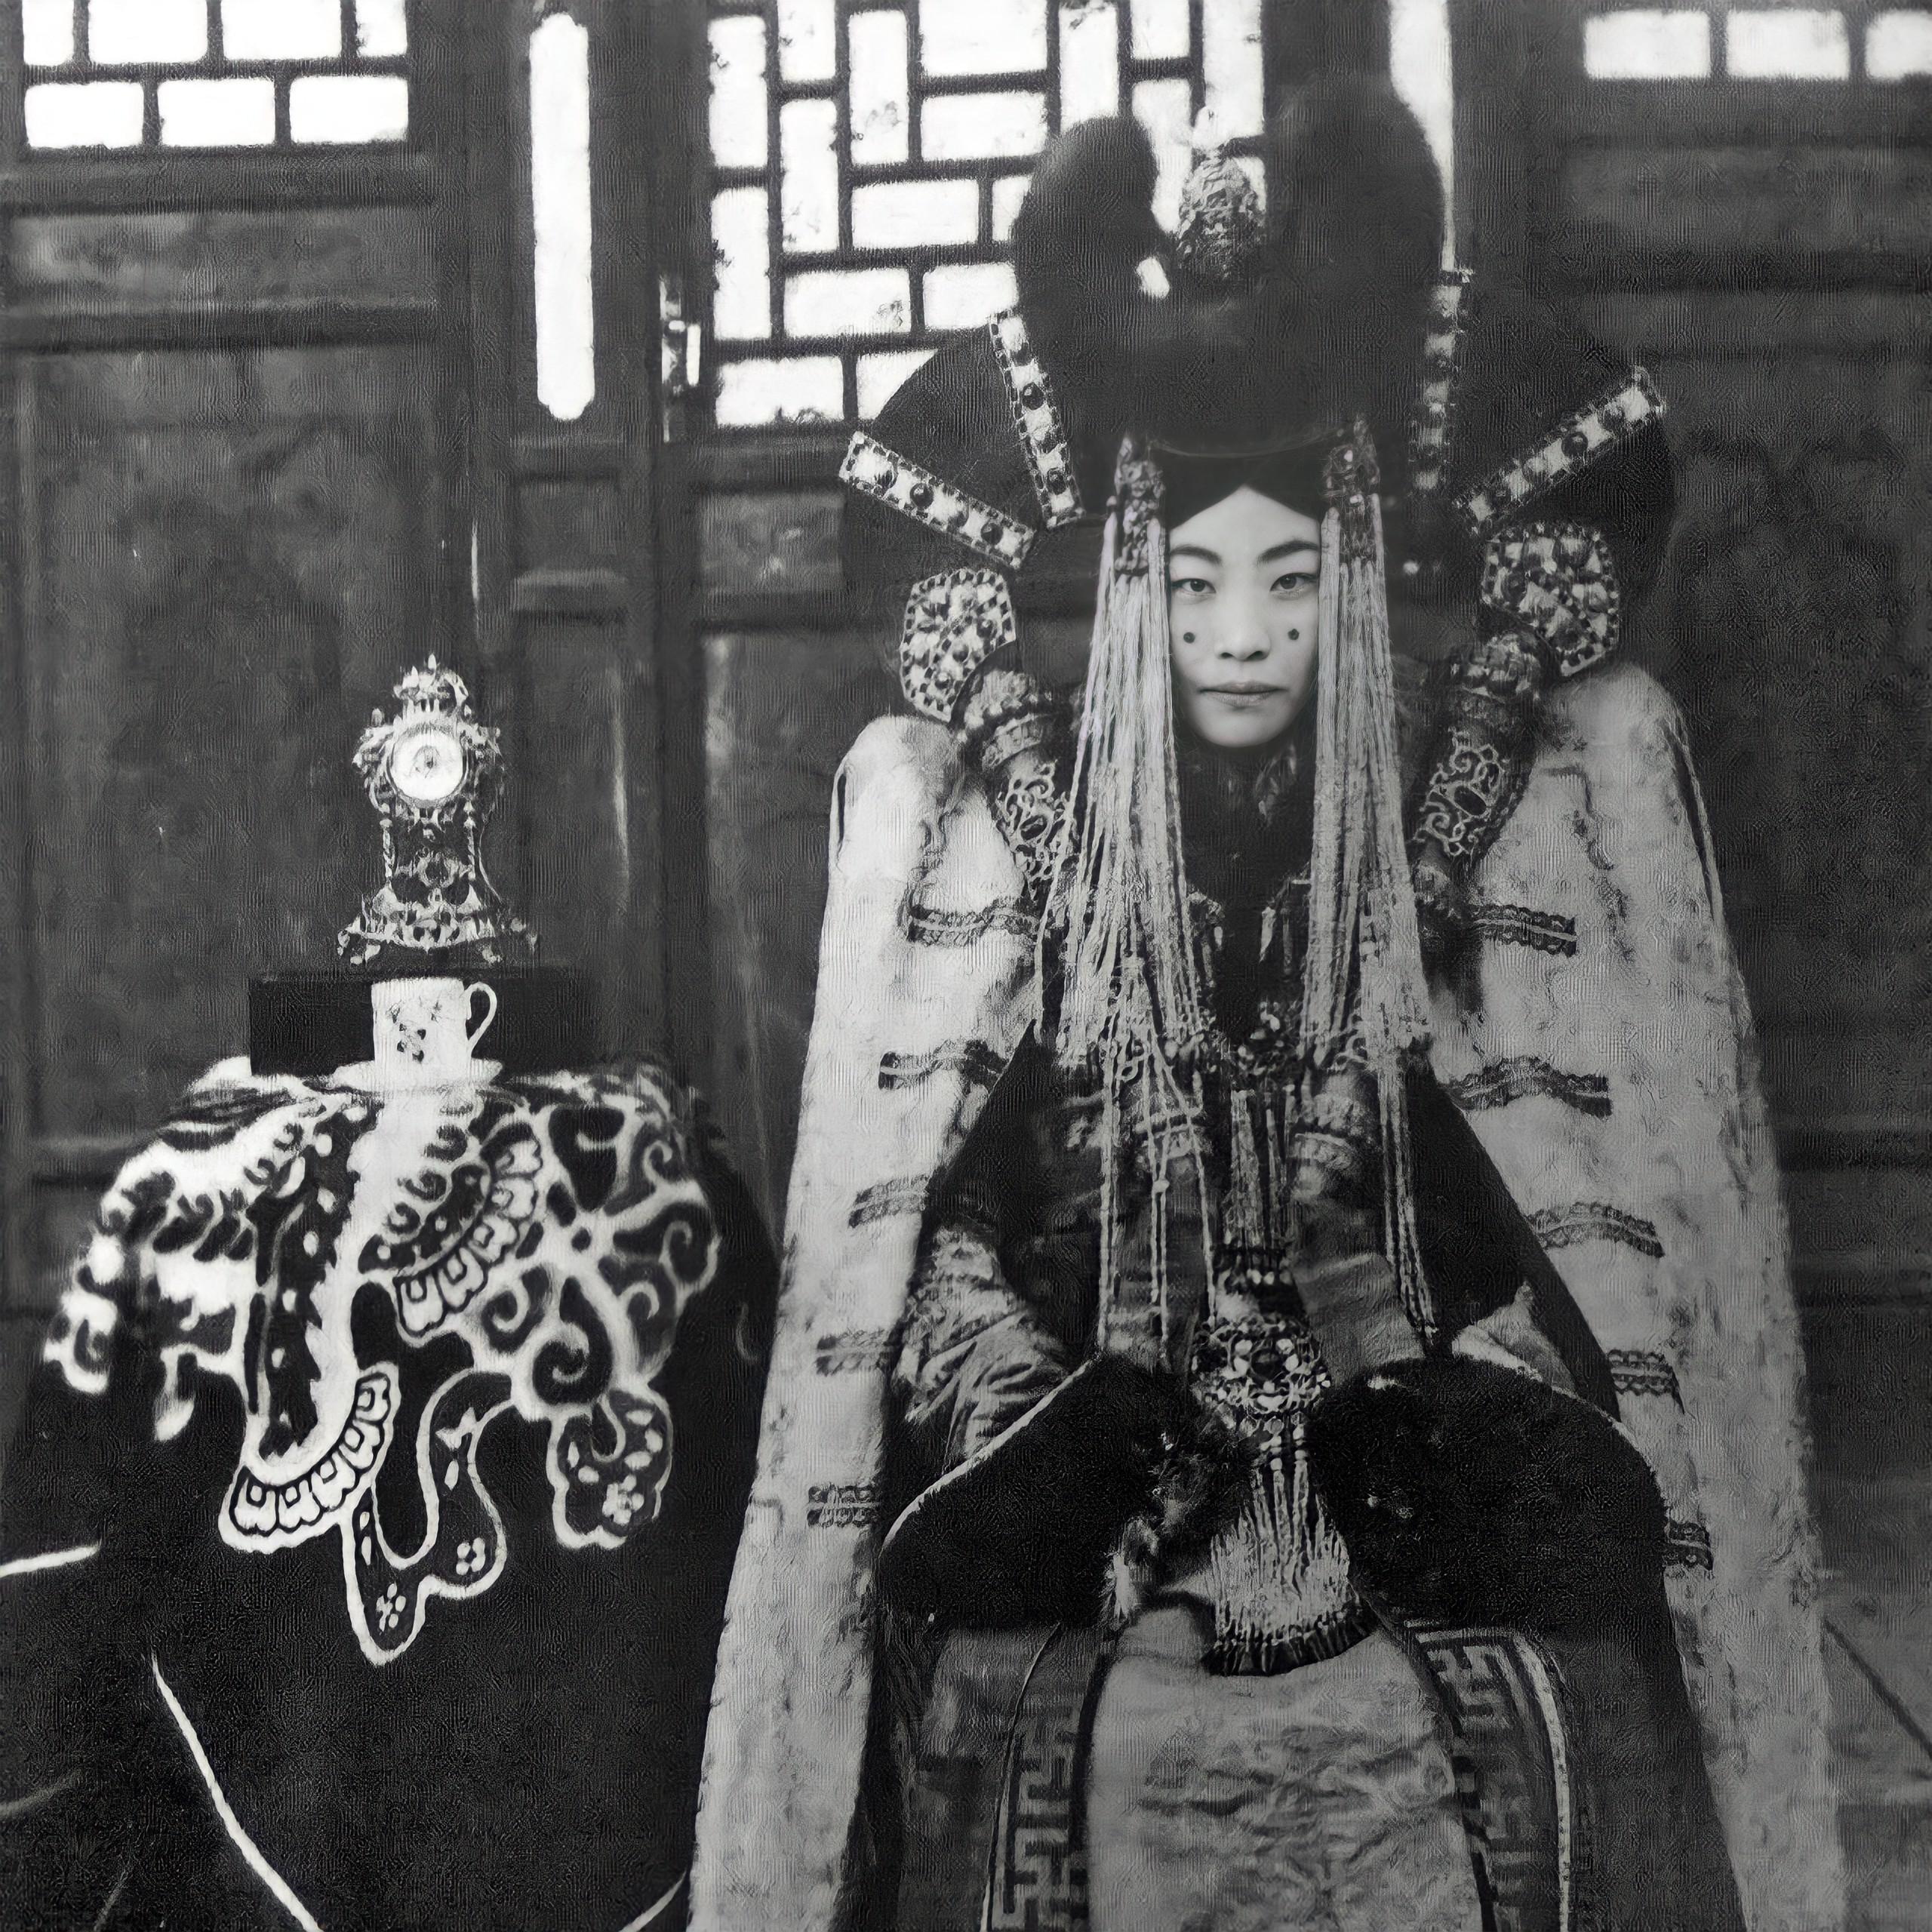 A rainha Genepil foi a última rainha da Mongólia. Ela foi executada em maio de 1938, baleada por tropas russas como parte da repressão stalinista na Mongólia. A personagem de Star Wars, Rainha Amidala, se inspirou nela.